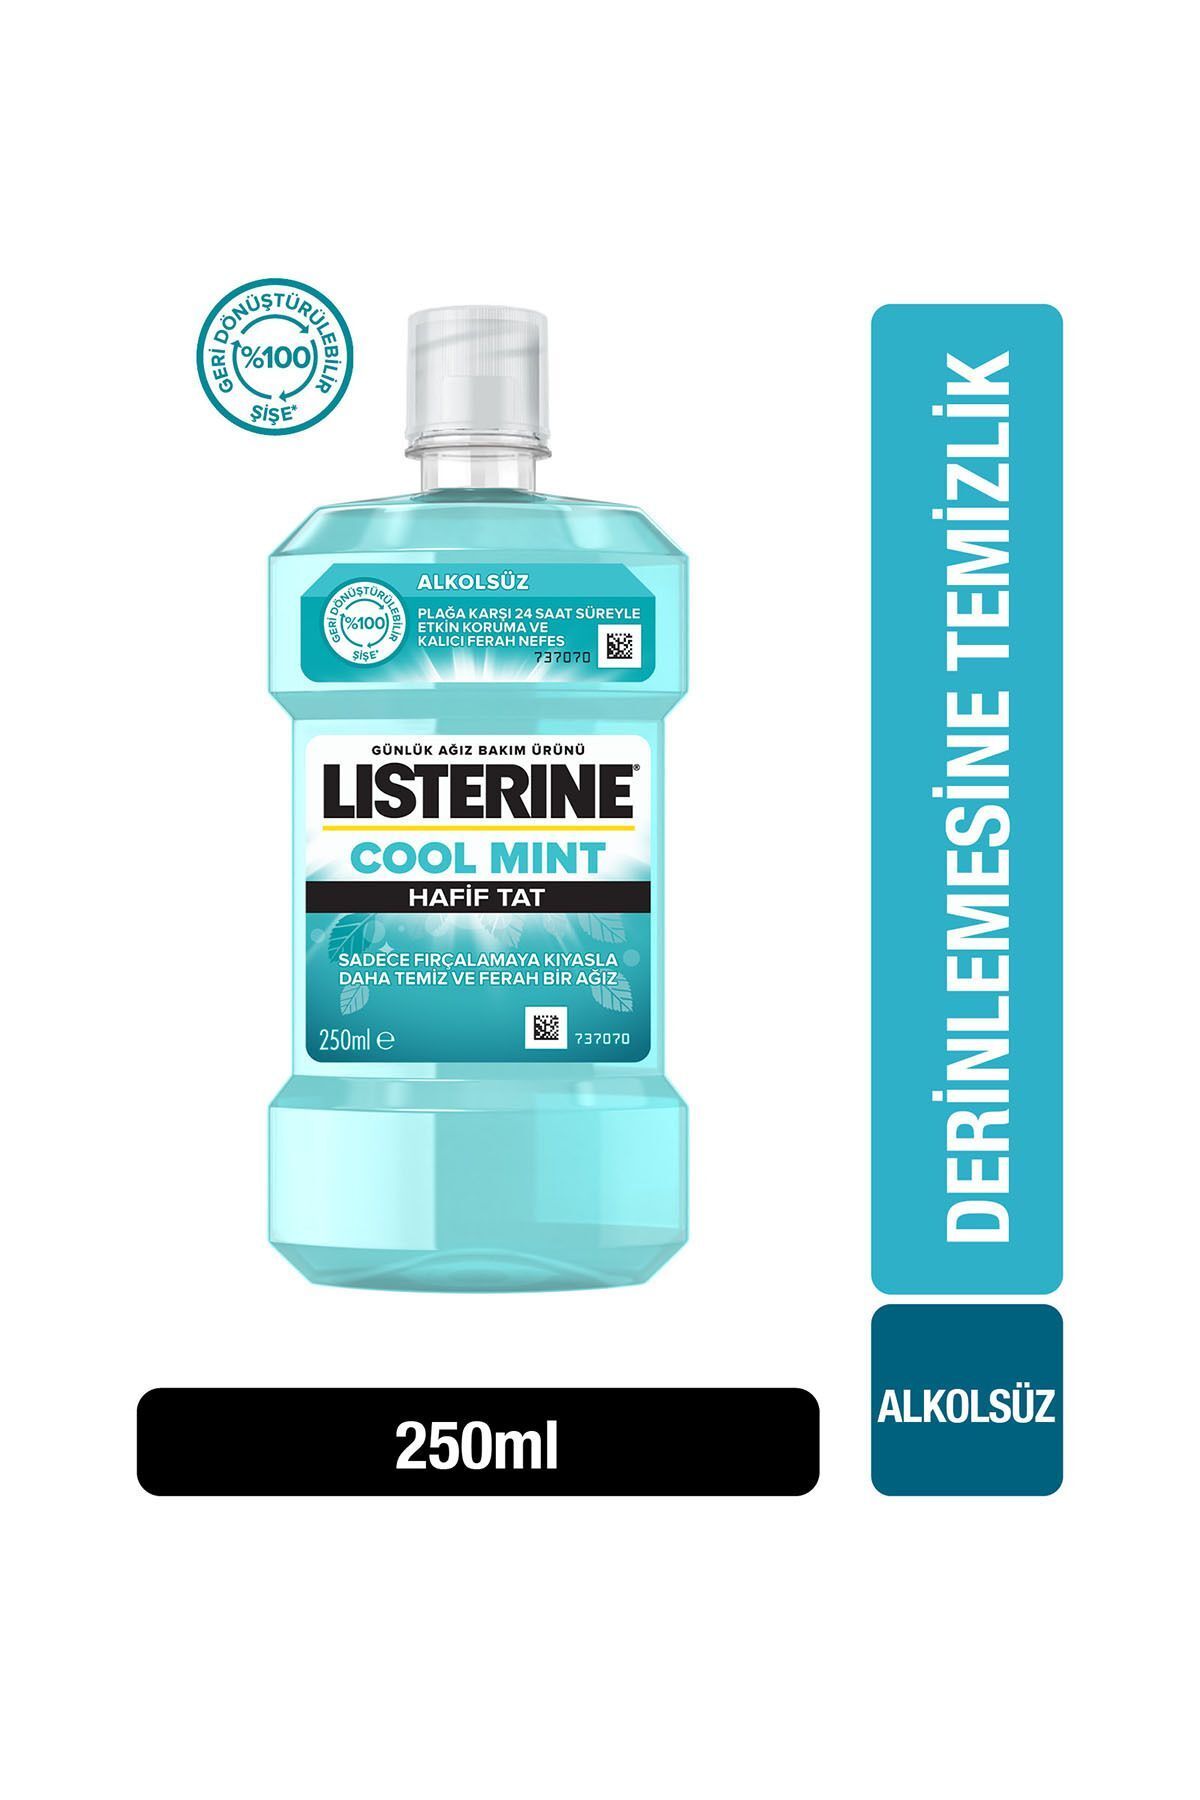 Listerine Cool Mint Alkolsüz Ağiz Bakim Suyu 250 ml